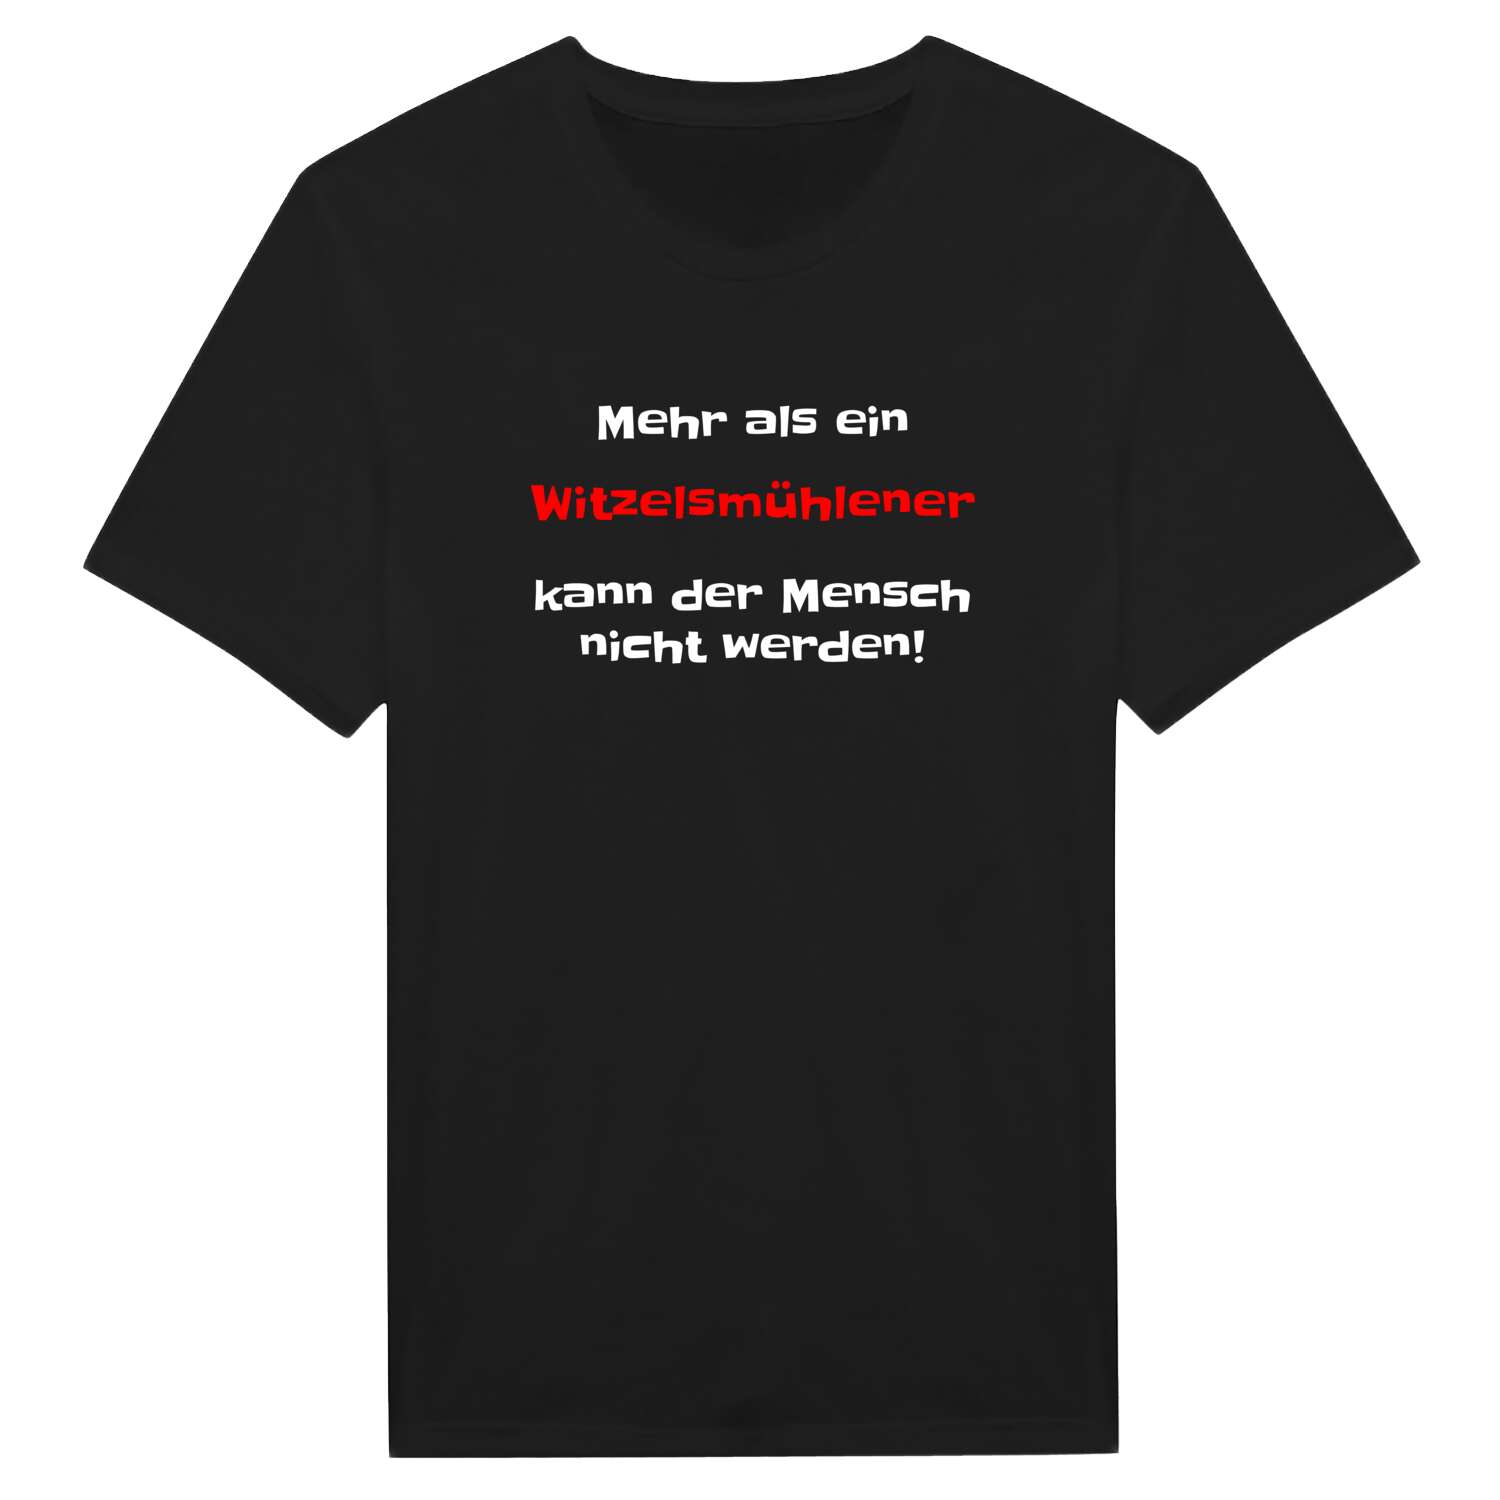 Witzelsmühle T-Shirt »Mehr als ein«